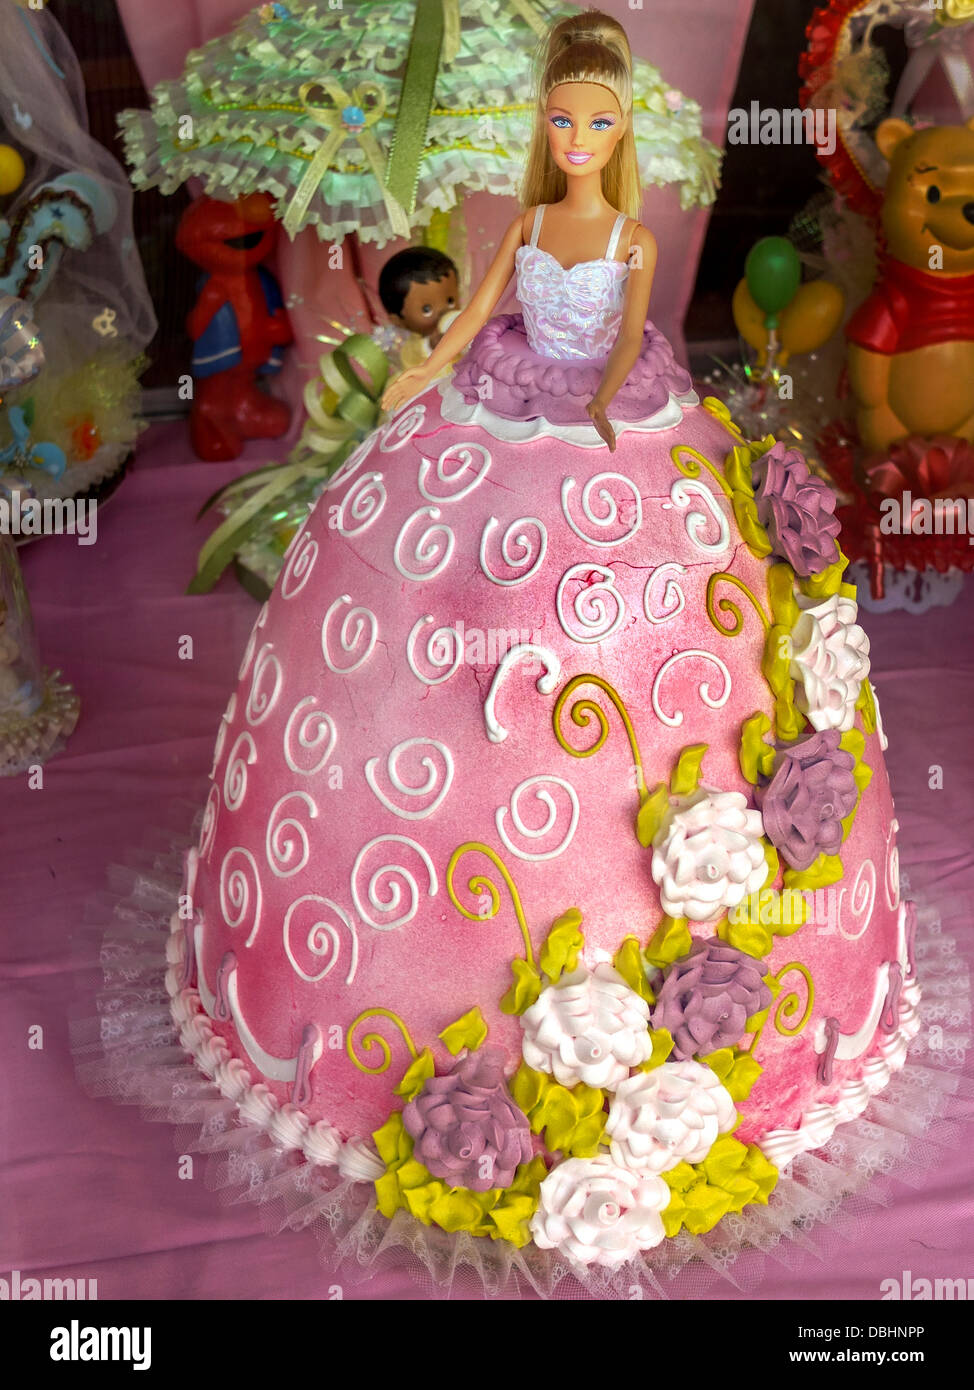 Una torta a forma di bambola Barbie del vestito è sul visualizzatore in corrispondenza di un forno nel Bronx, New York City. Foto Stock